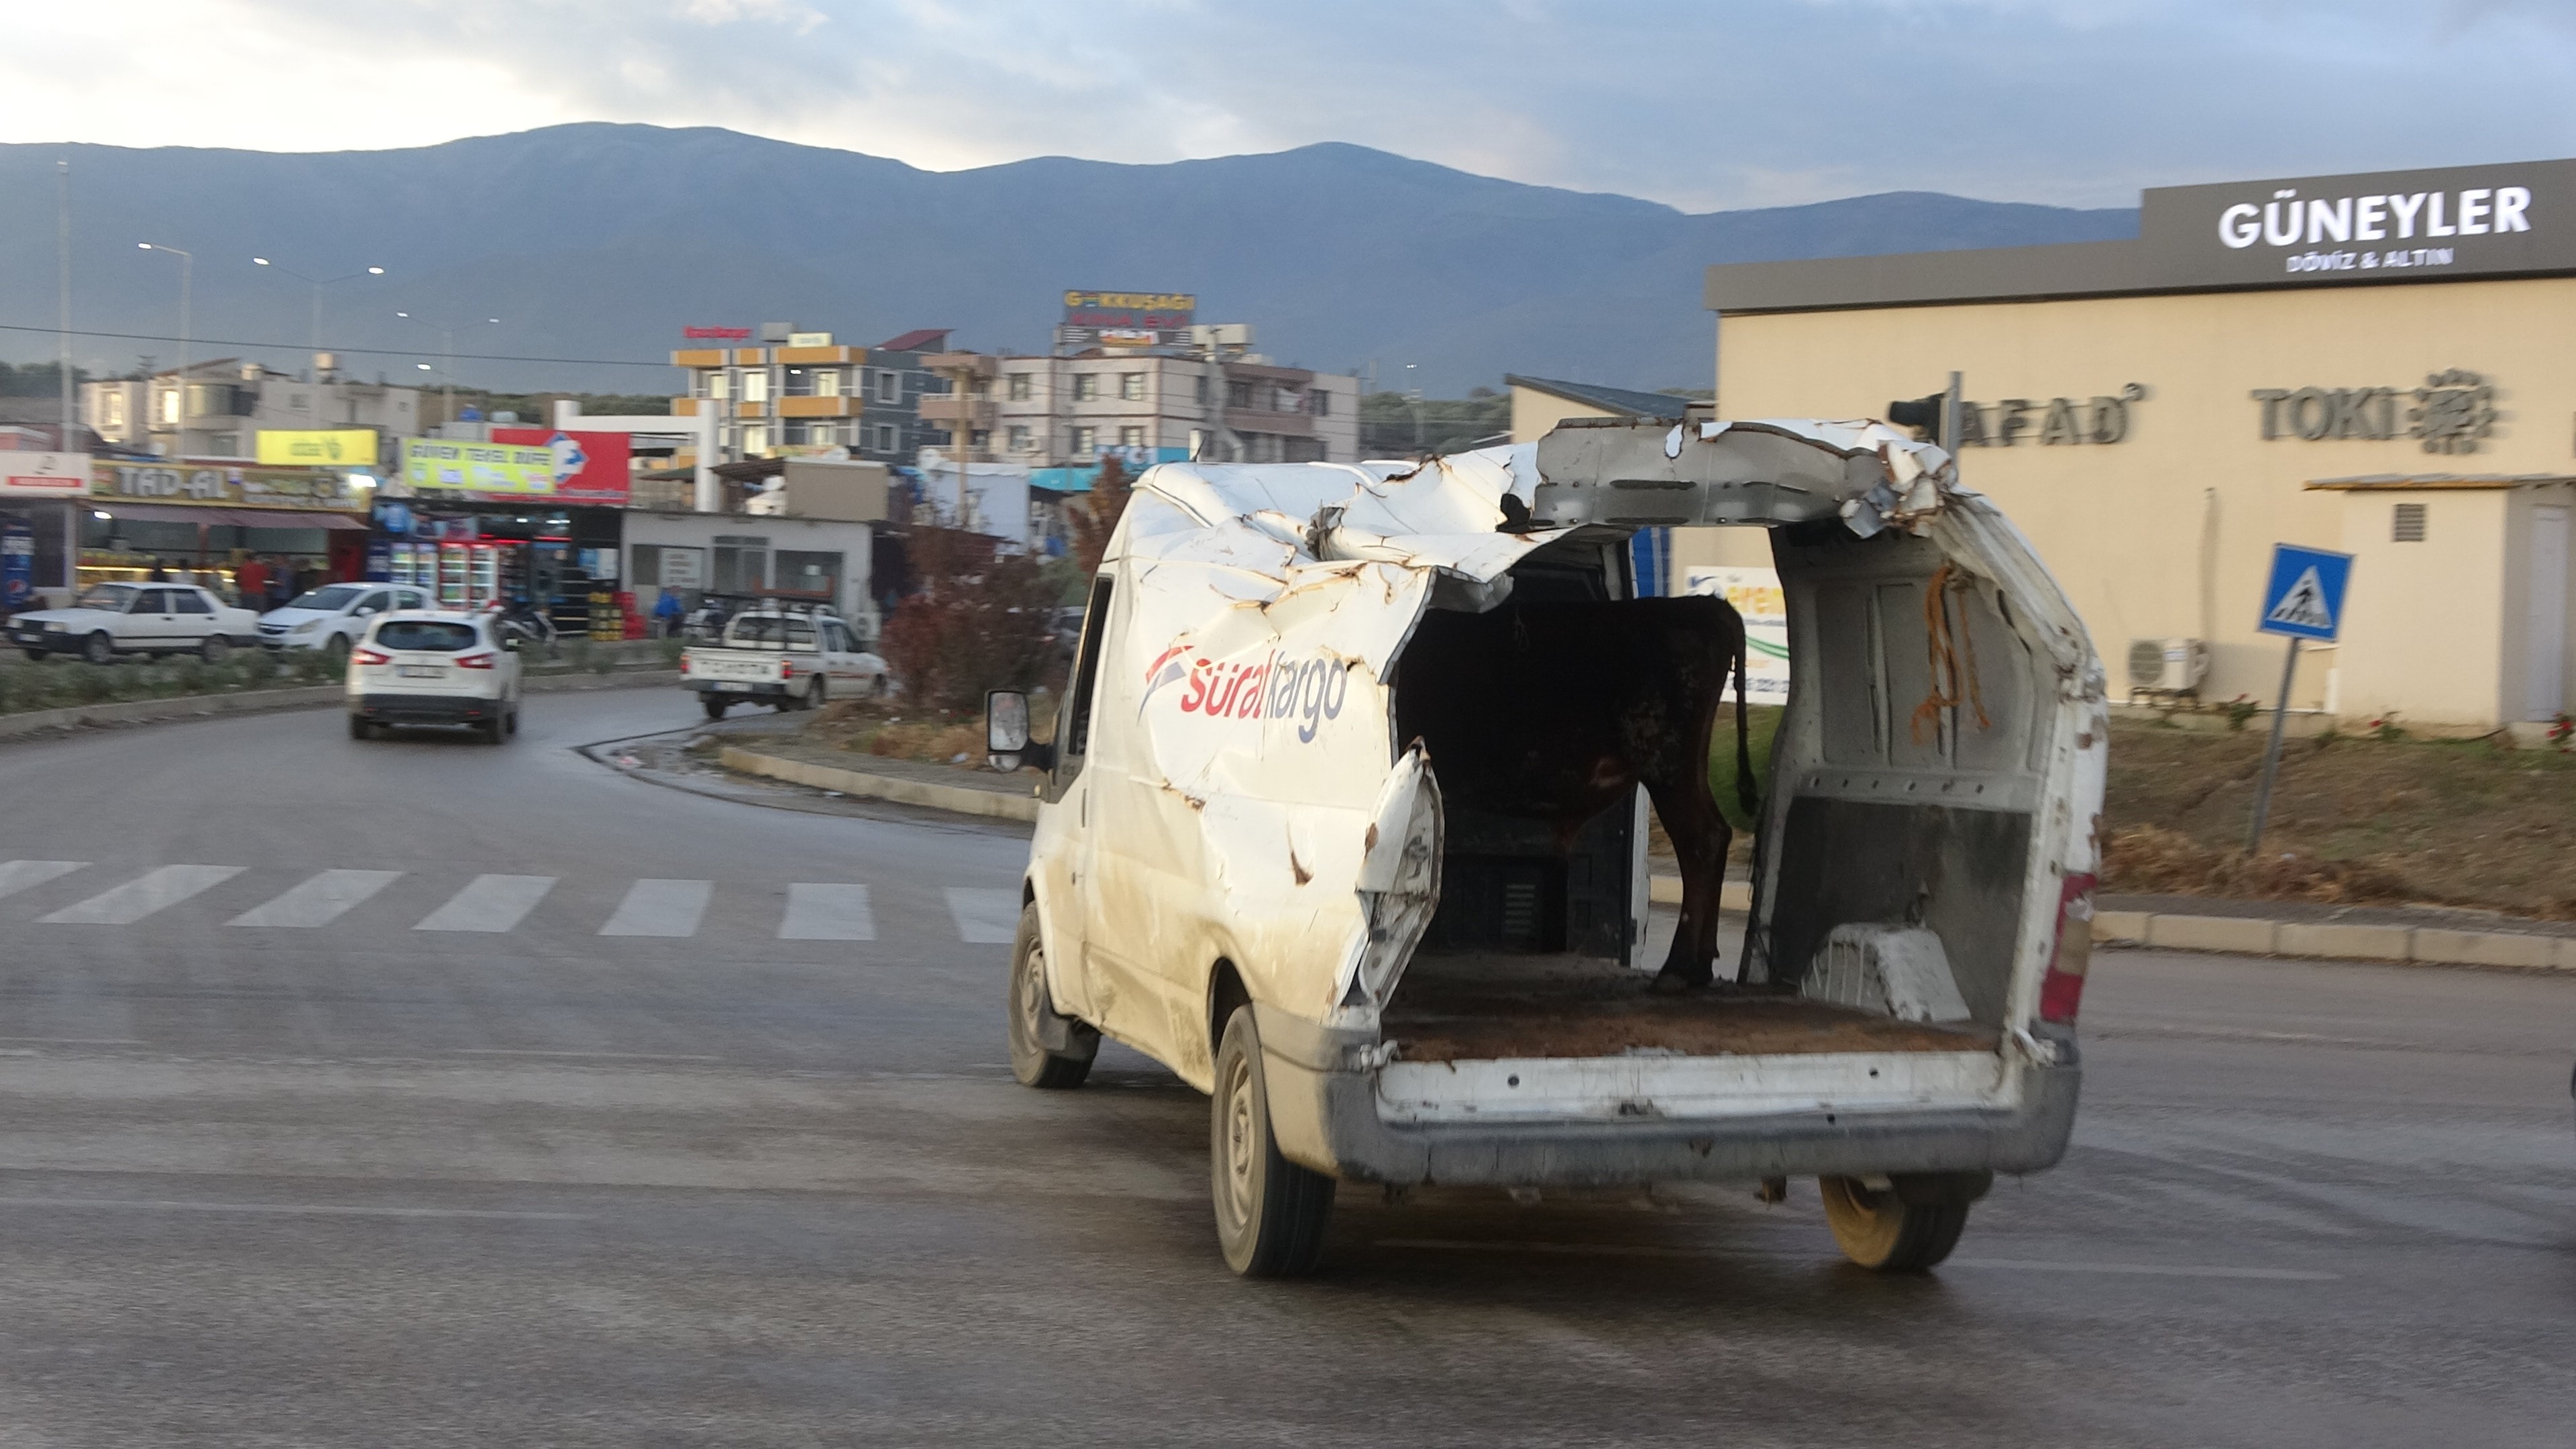 Depremlerde hasar gören araçlarla baş başa kalan Hataylı Ahmet Sungur, maddi zorluklar nedeniyle aracını tamir ettirememiş ve bu hasarlı aracını hayvancılık işi için kullanmaya başladı